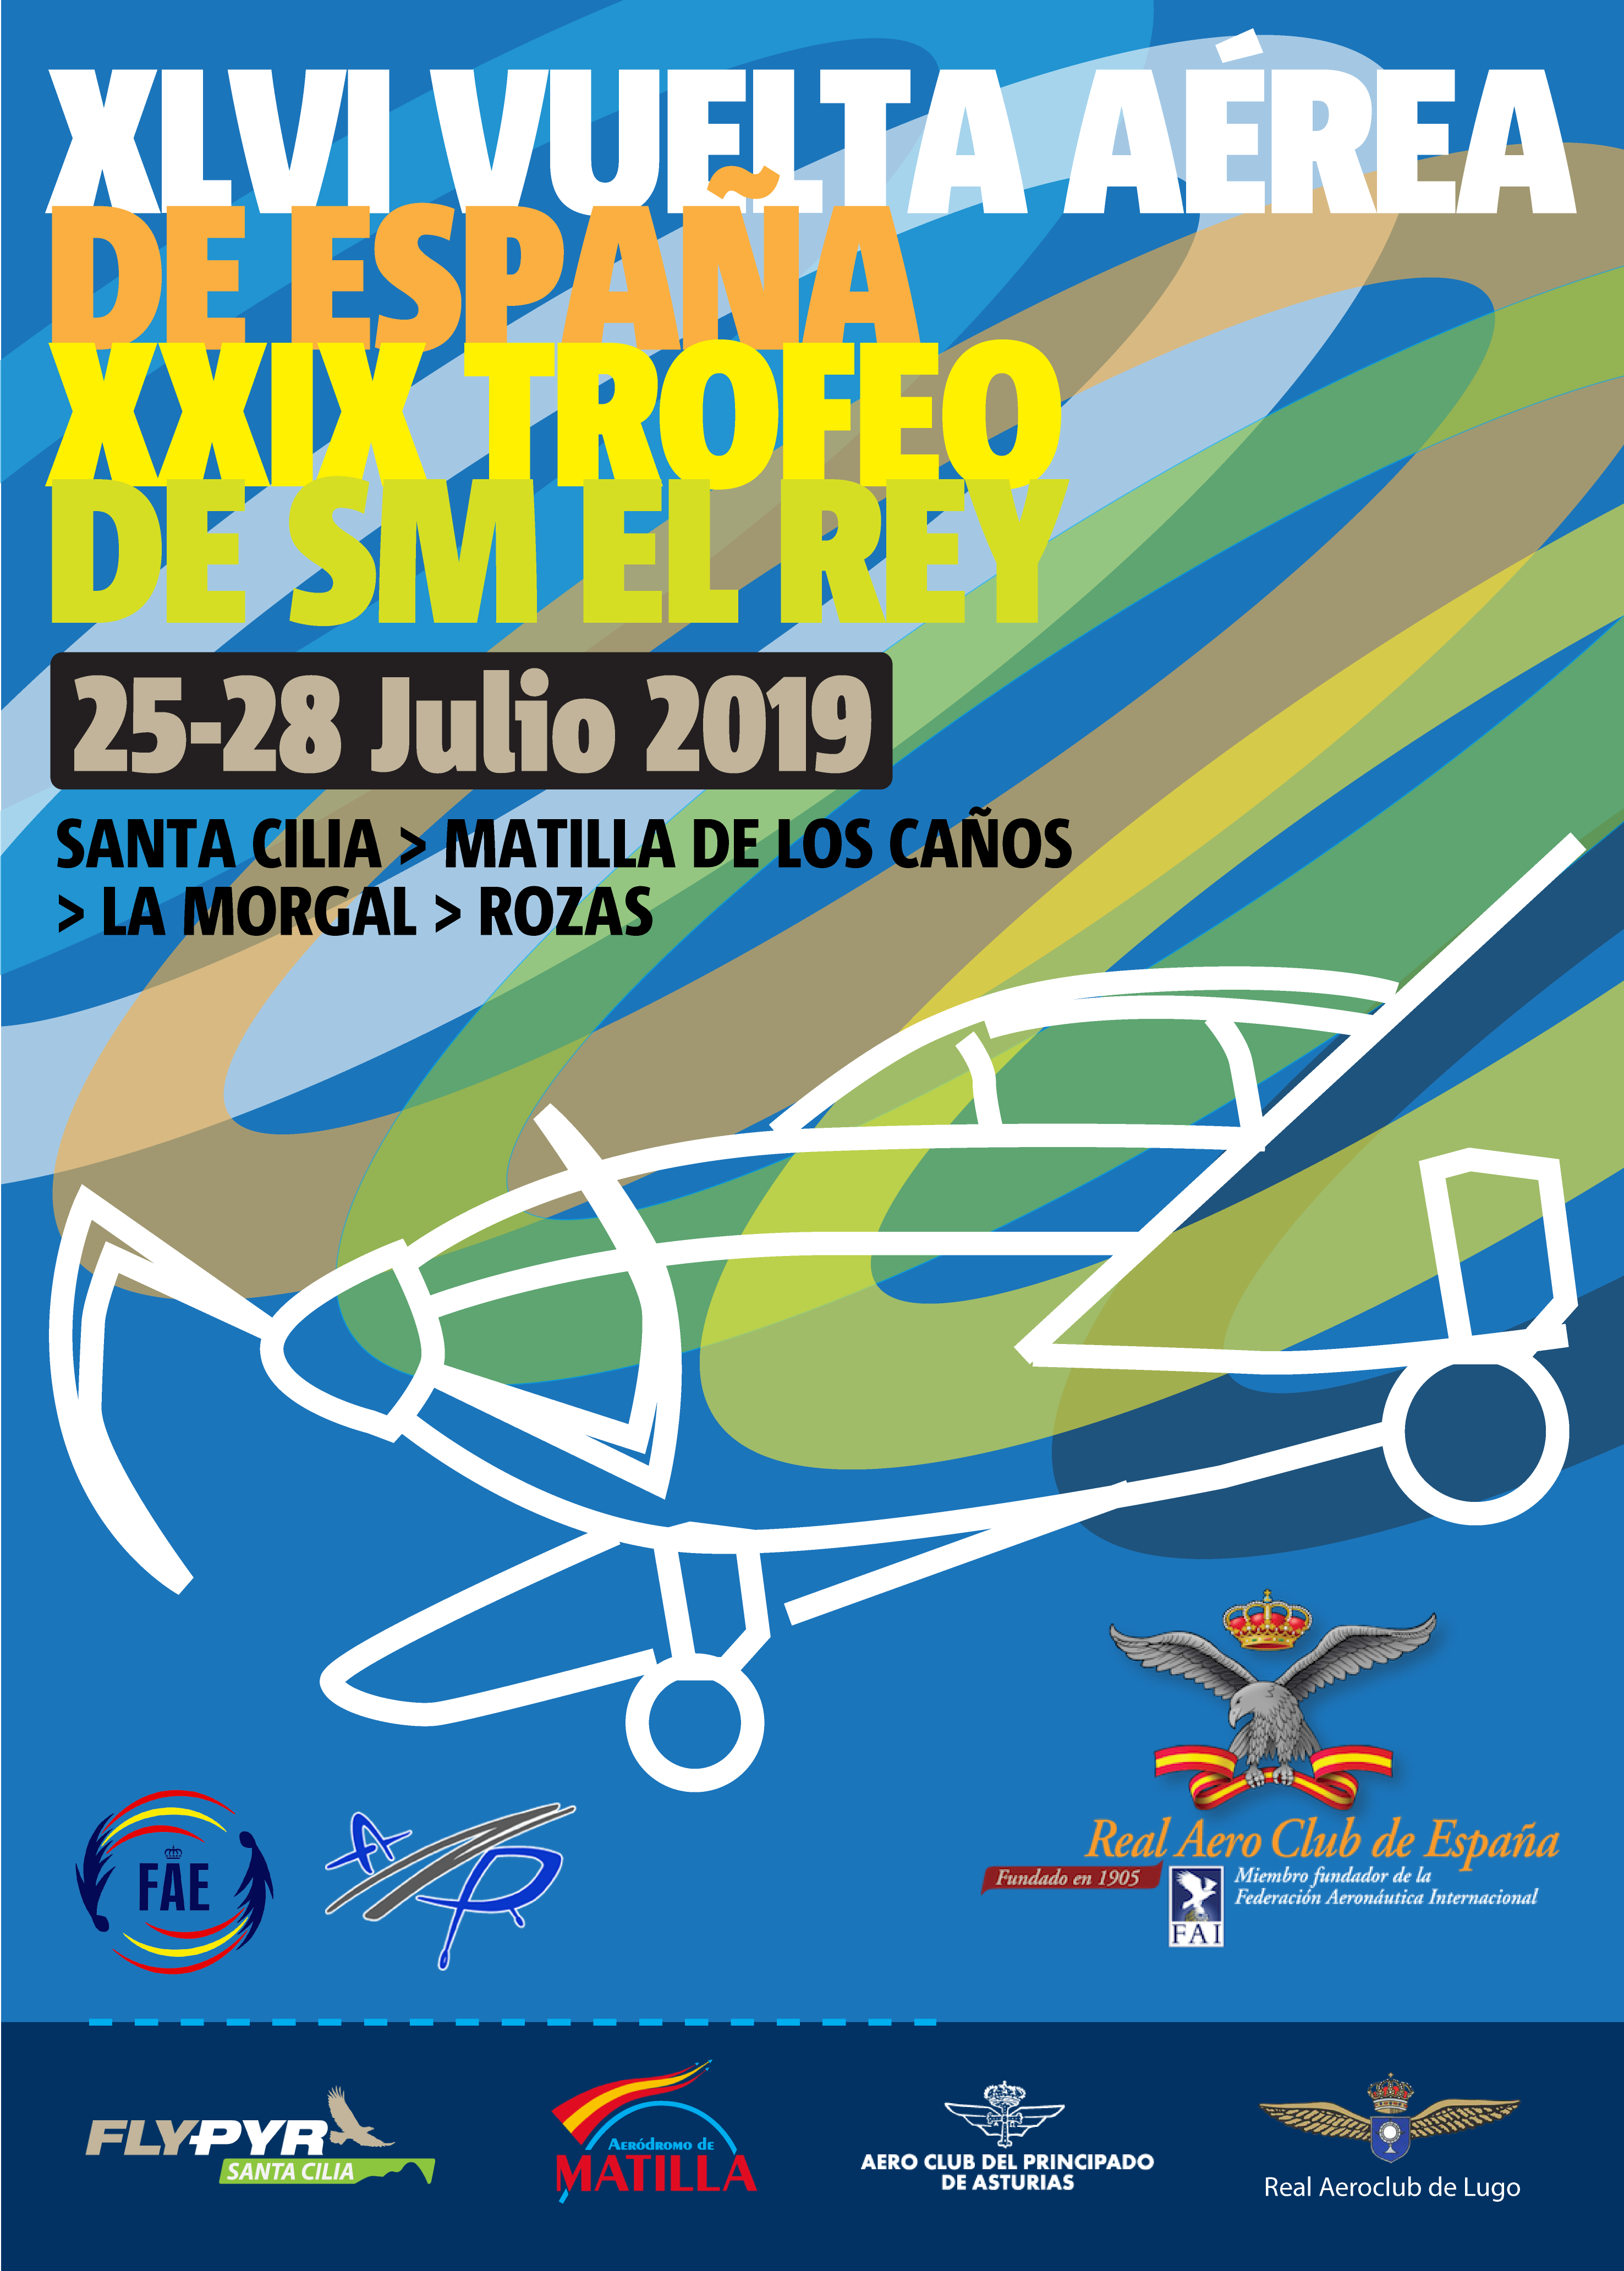 La XLVI Vuelta Aérea de España comenzará en el Aeródromo de Santa Cilia